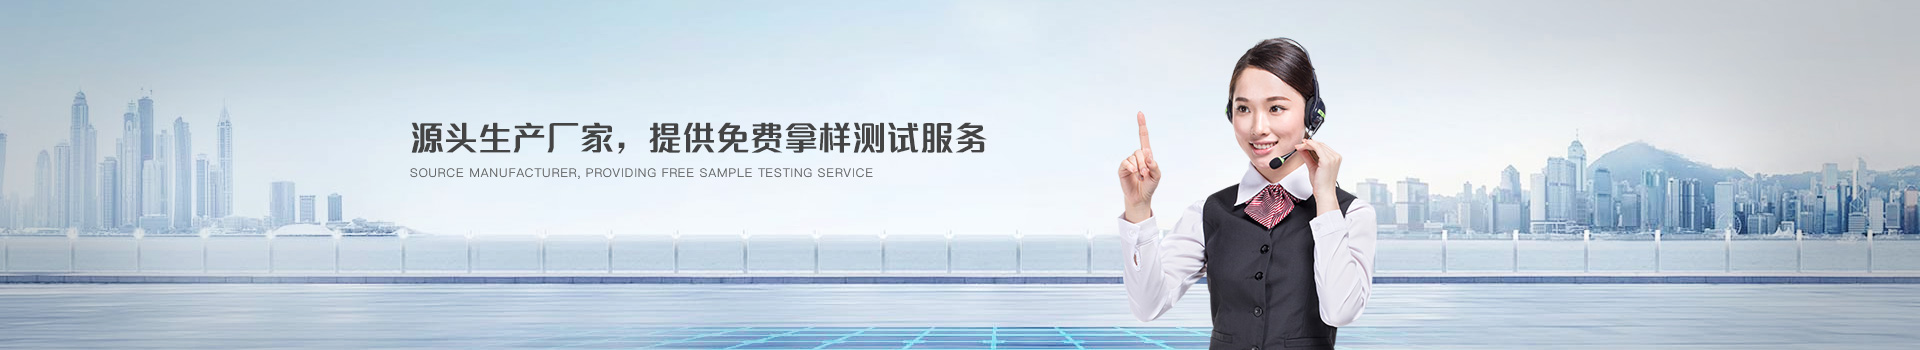 鈺鑫電氣，源頭生產廠家，提供免費拿樣測試服務